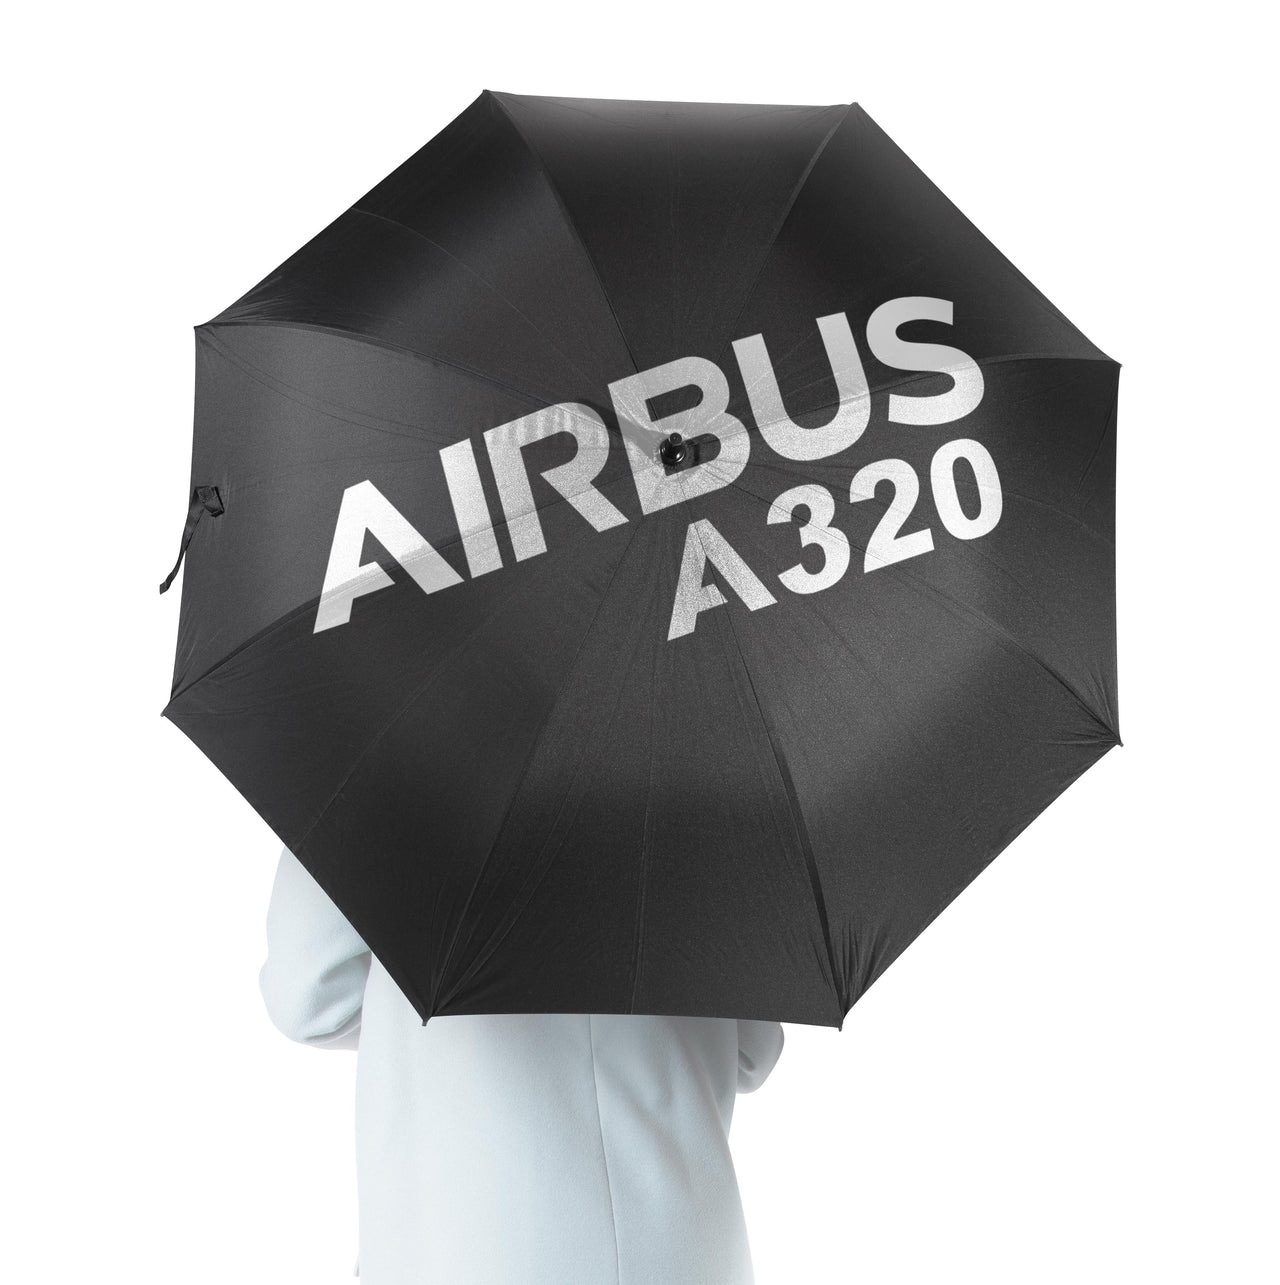 Airbus A320 & Text Designed Umbrella